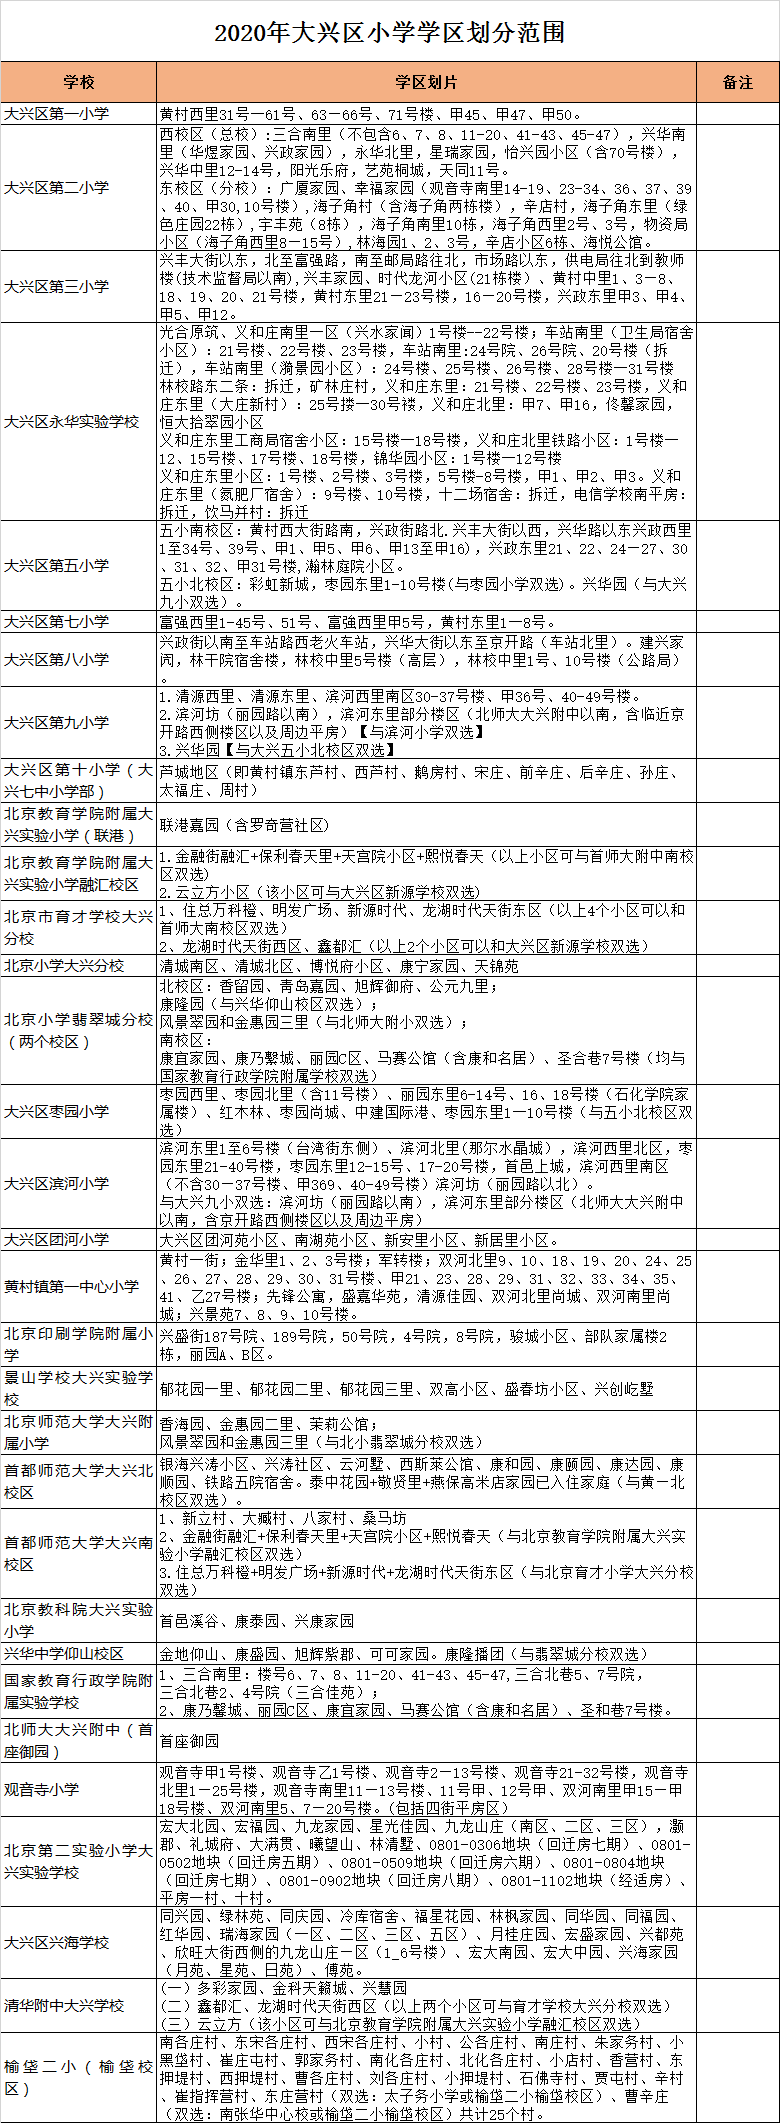 北京市大兴区小学入学学区划分2020